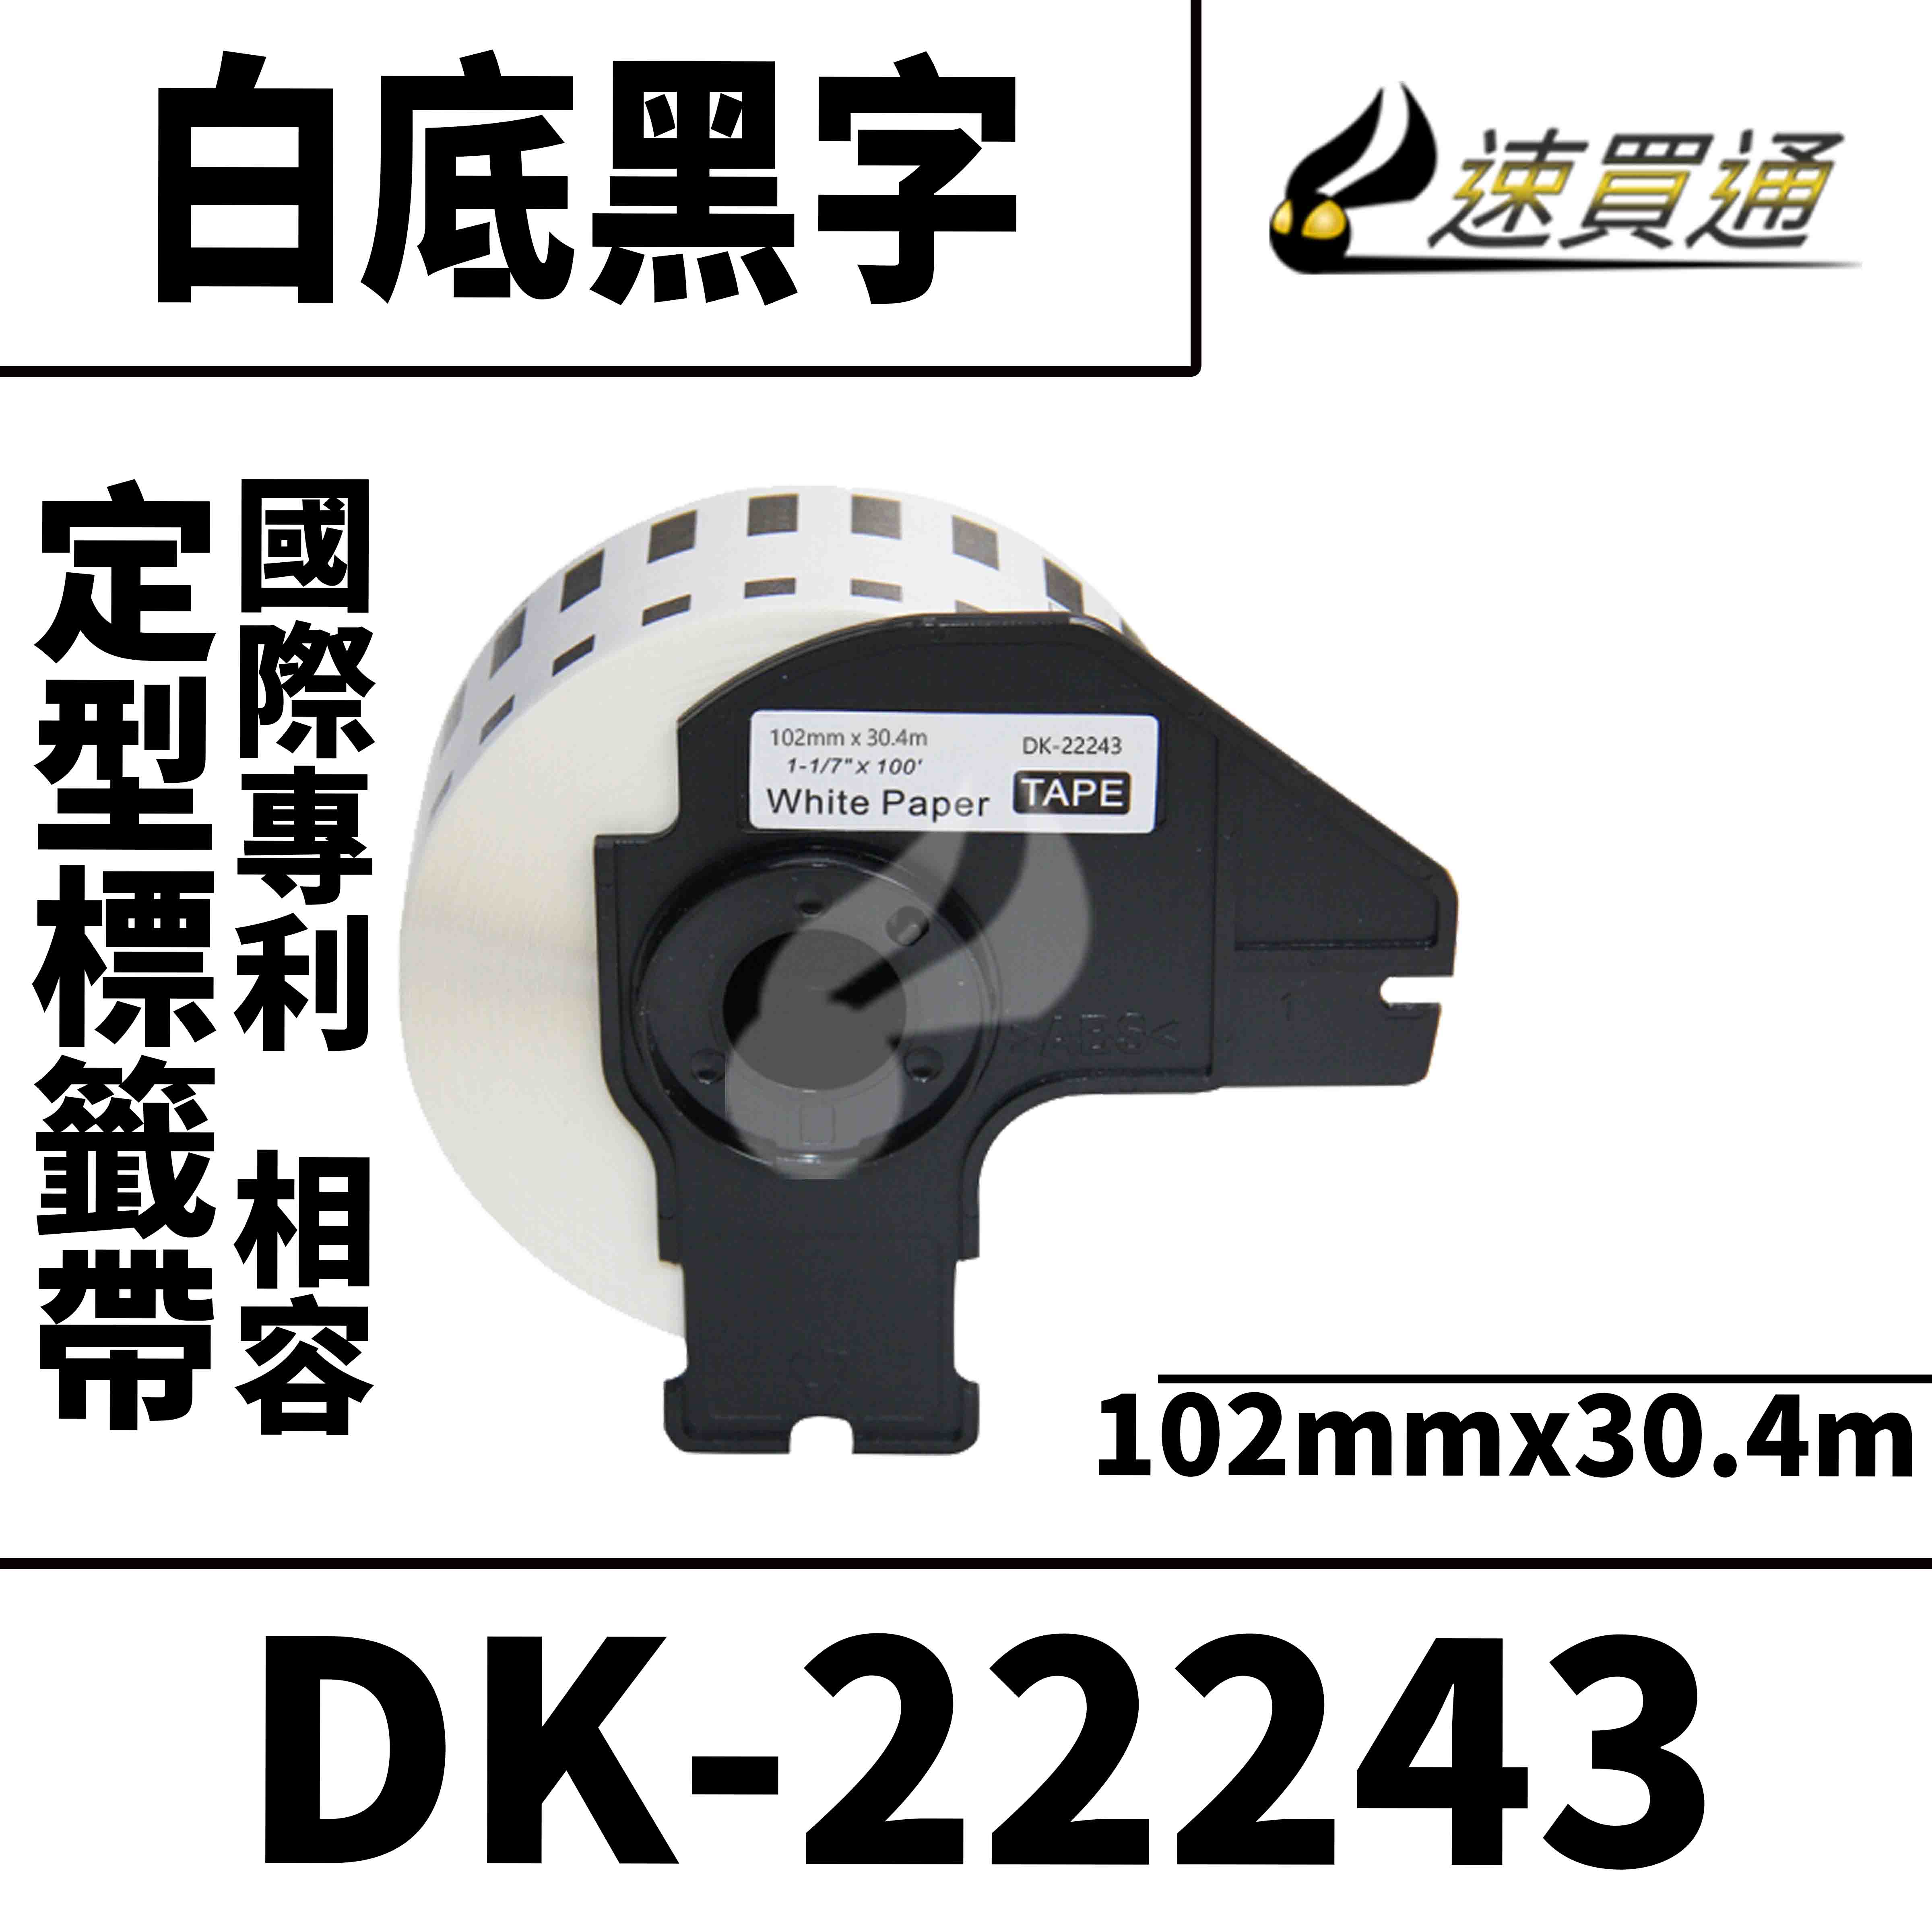 【速買通】Brother DK-22243/白底黑字/102mmx30.4m 相容定型標籤帶